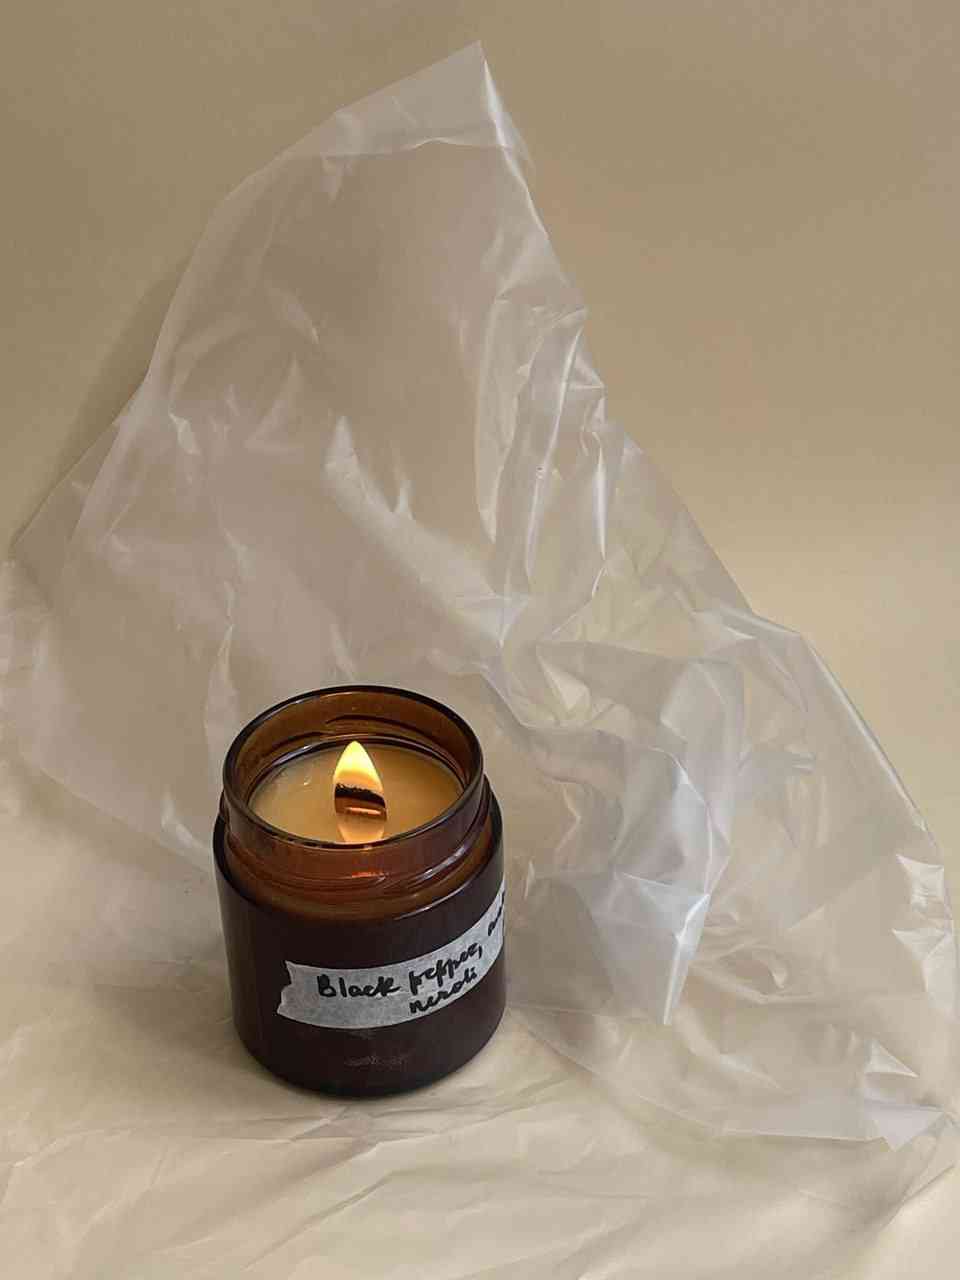 Застывание свечей или полимеризация